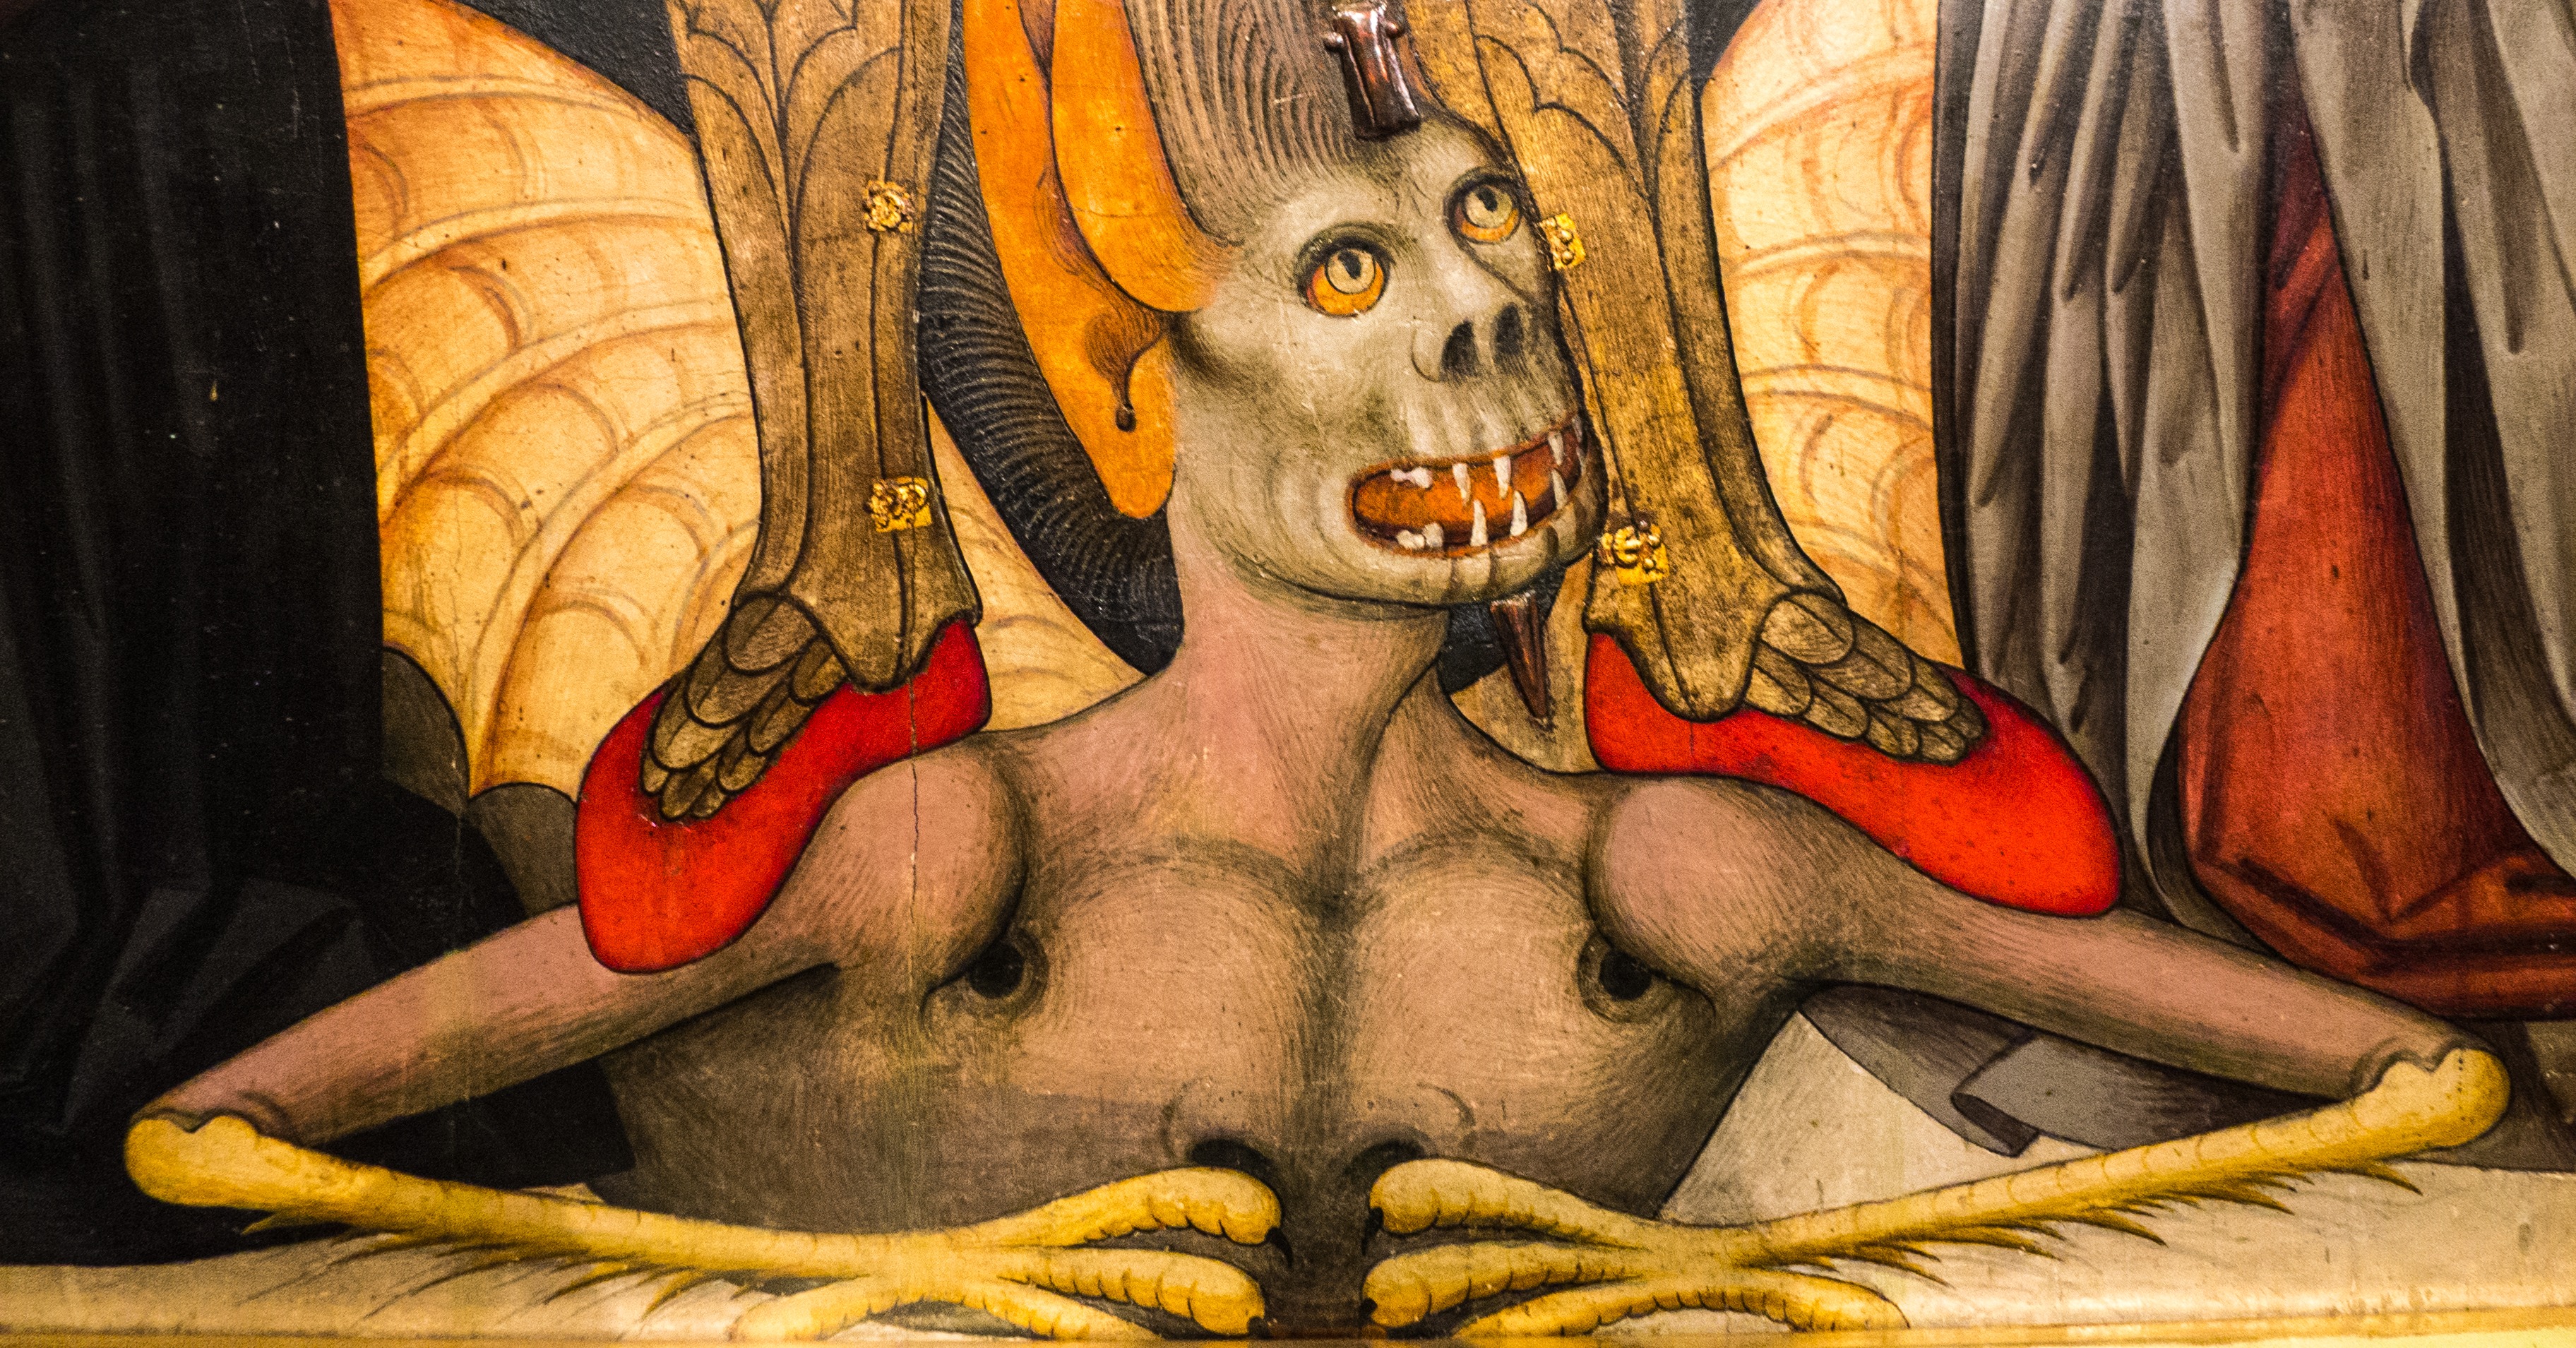 La imagen muestra la ilustración de un demonio medieval